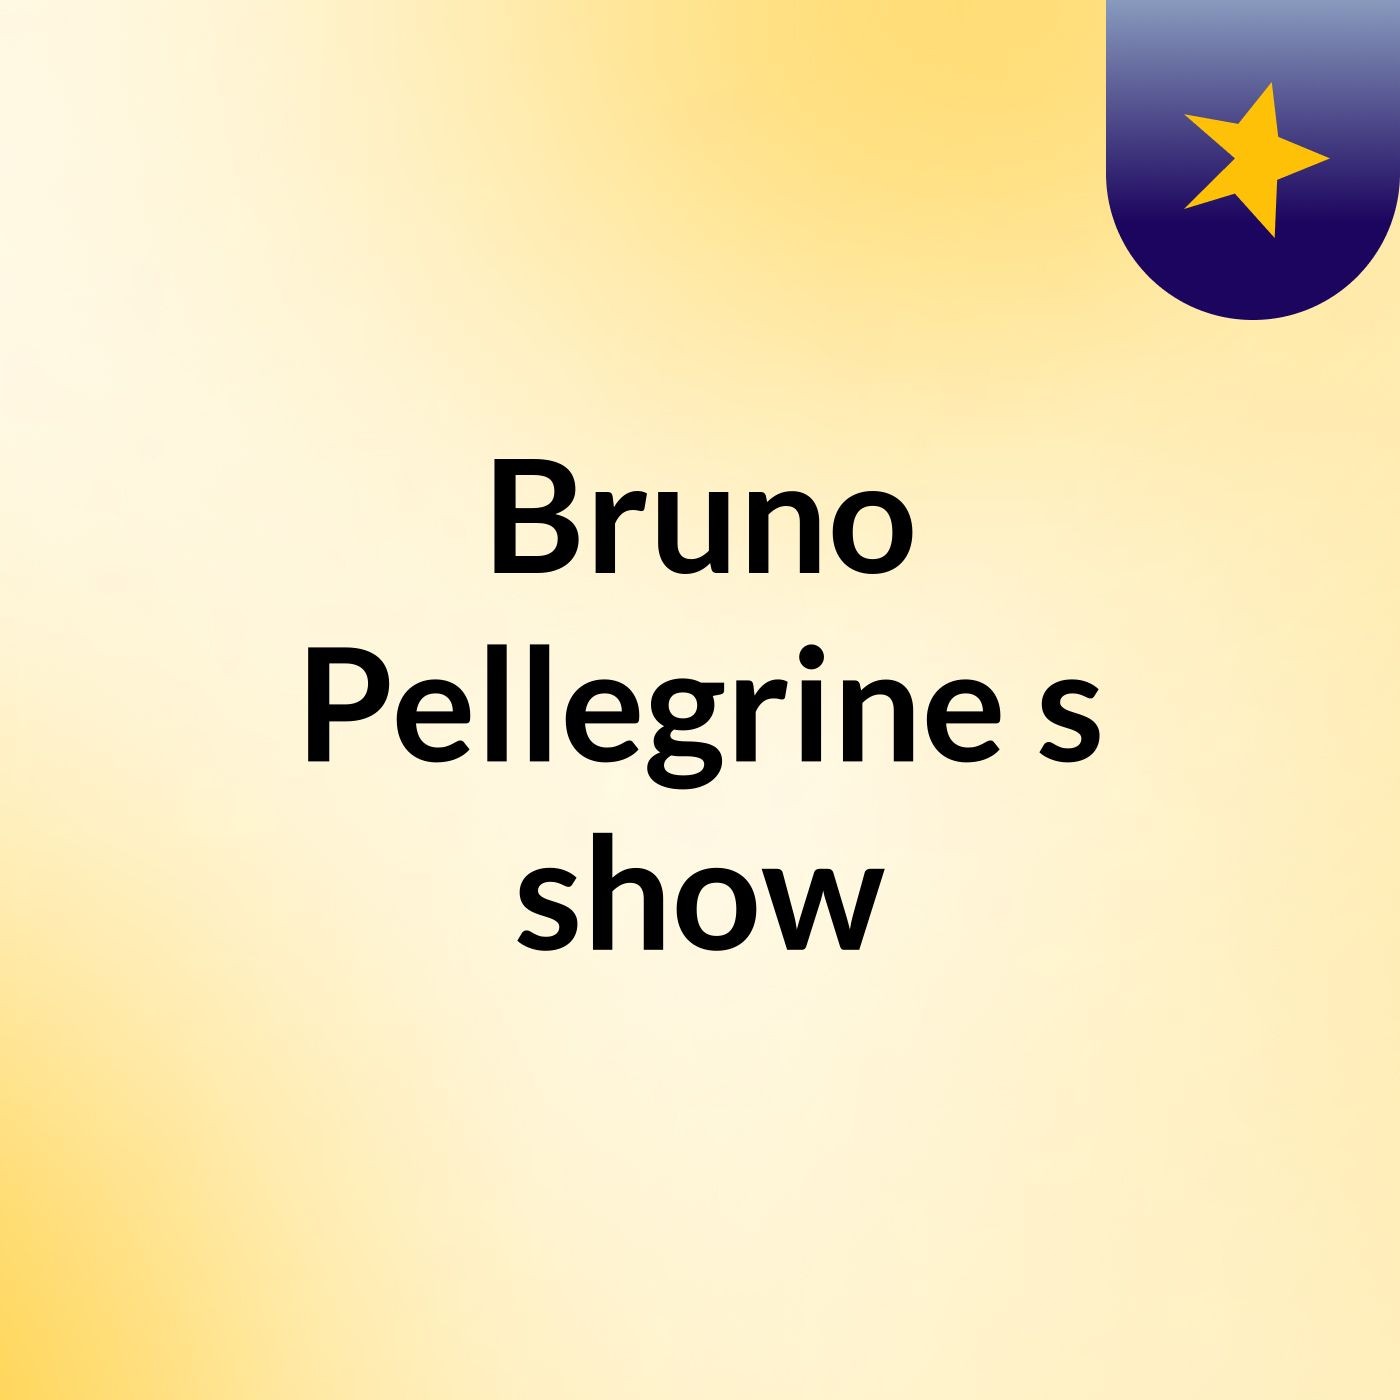 Episódio 11 - Bruno Pellegrine's show